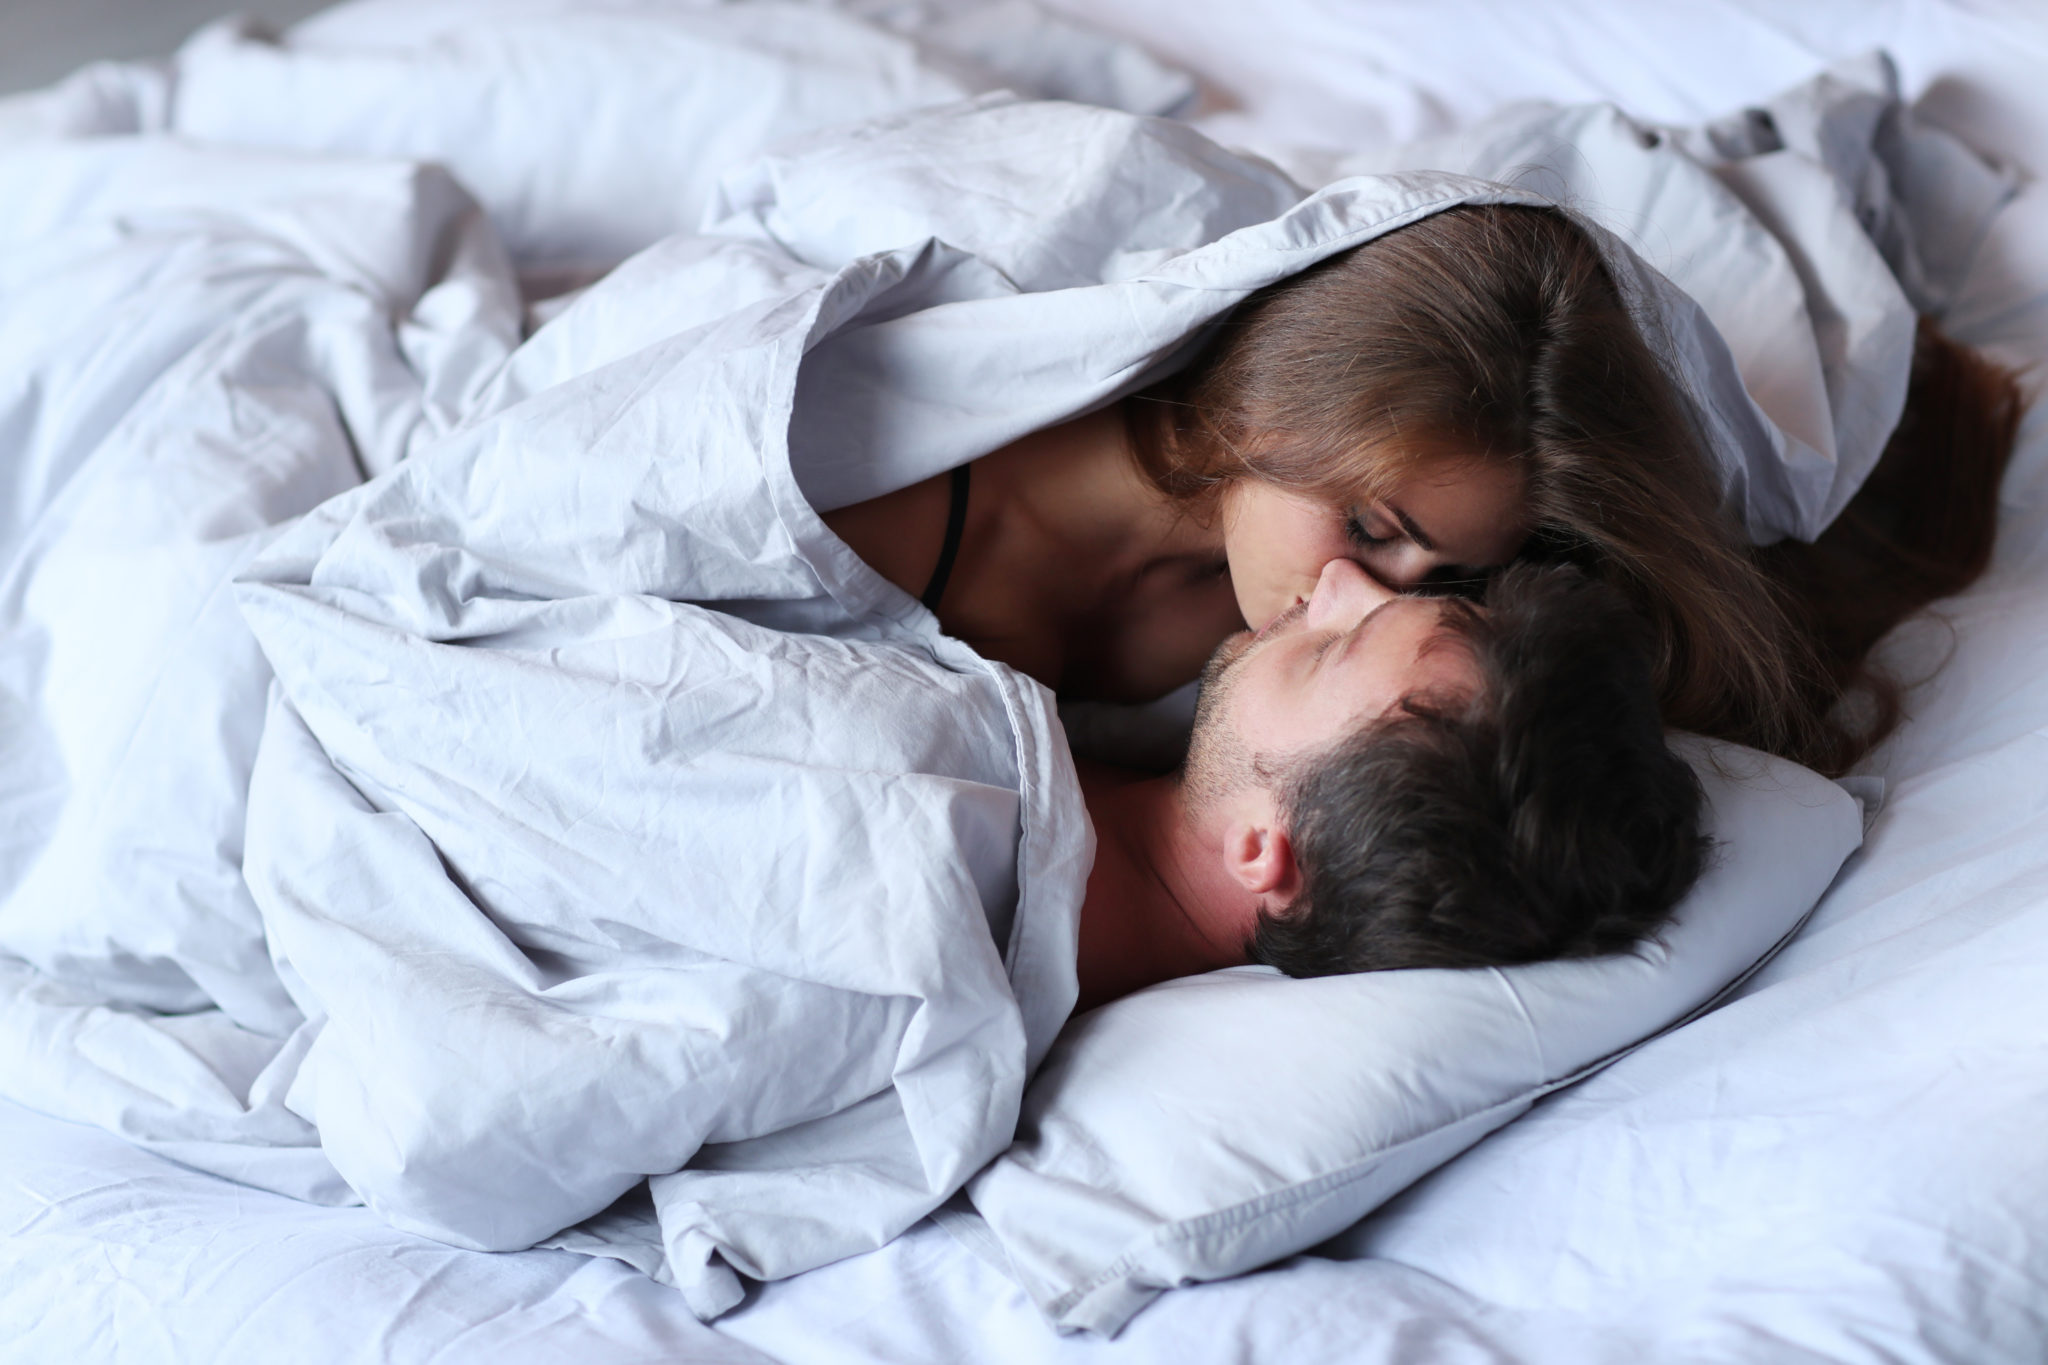 Мужчина и женщина под одеялом